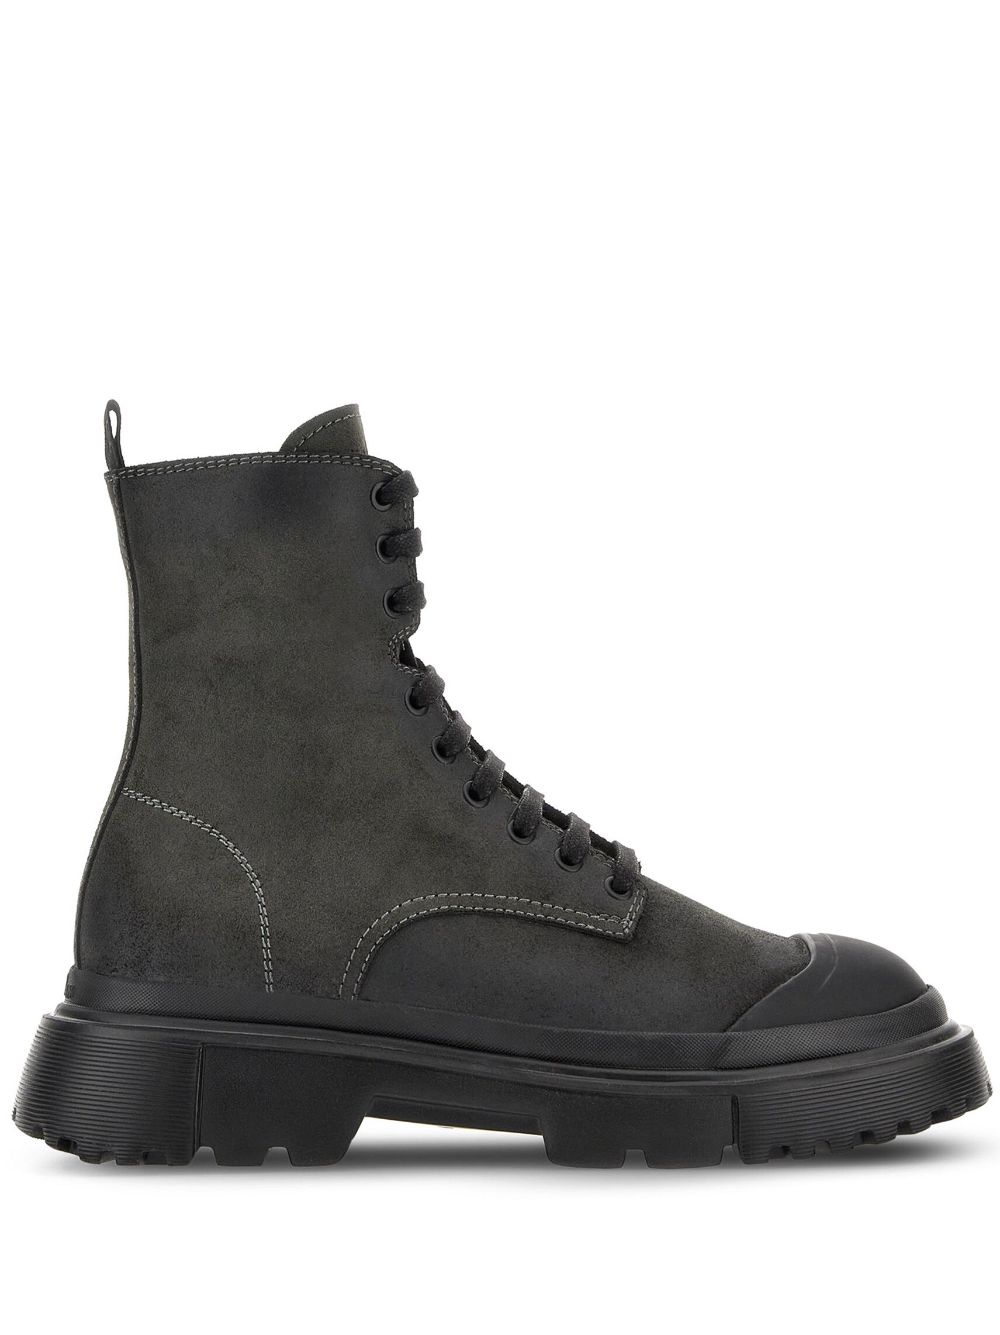 Hogan H619 Anfibio leather boots - Black von Hogan